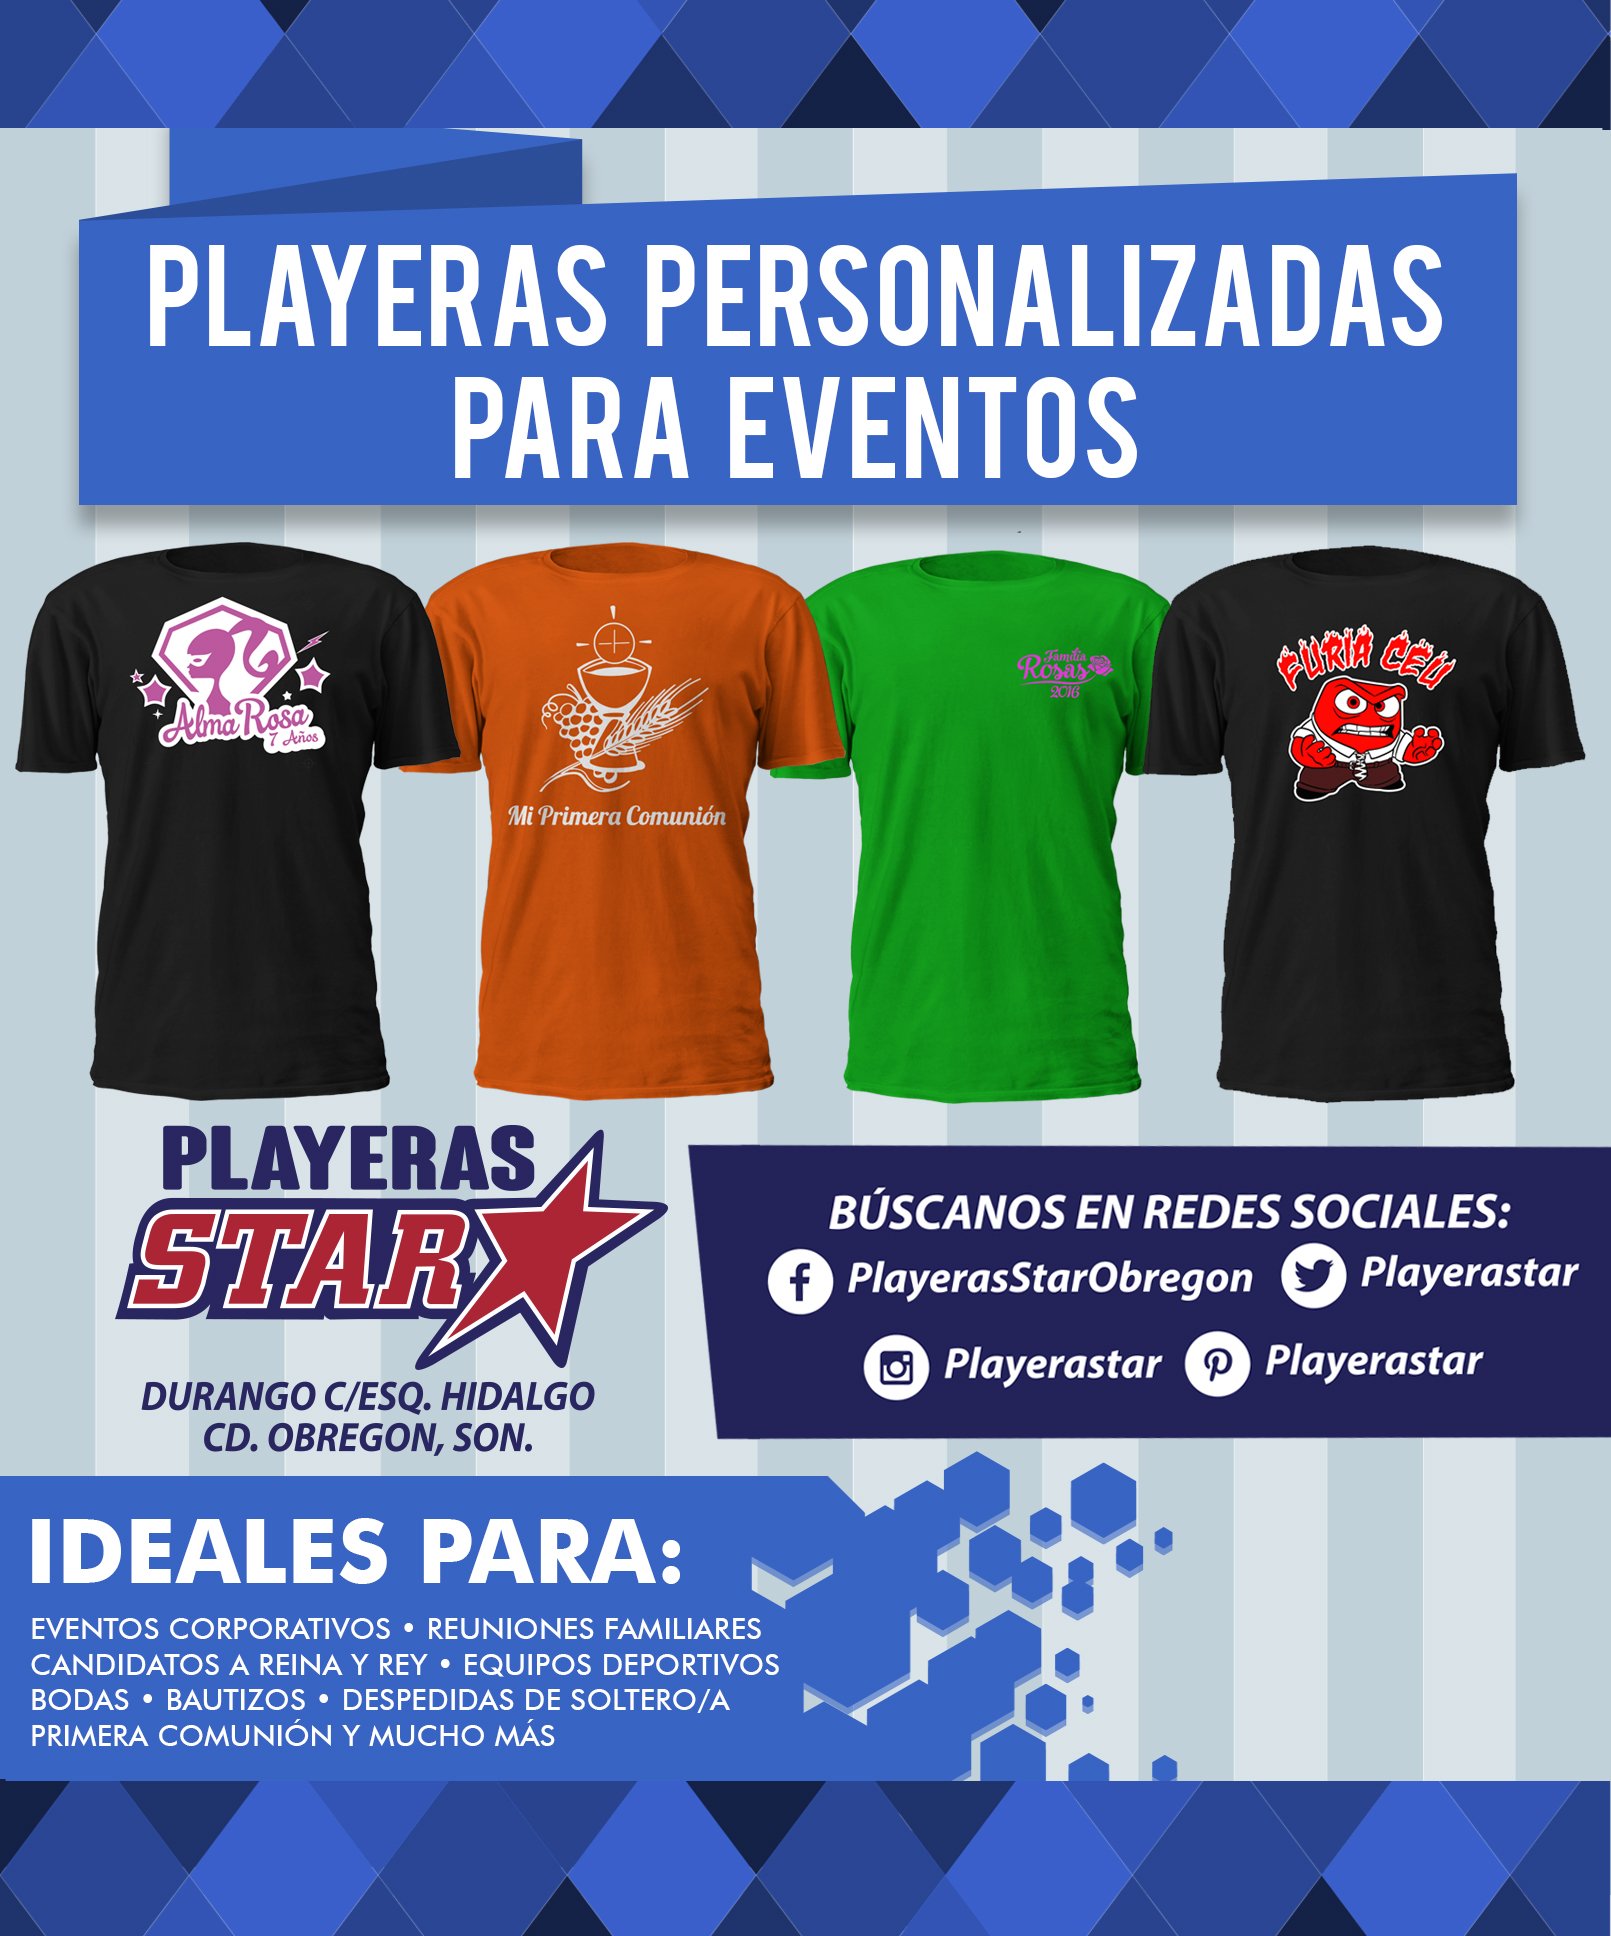 Playeras Star on Twitter: "Las mejores playeras personalizadas para tu evento están en Playeras Star, Durango c/esq. Hidalgo #CdObregón #Sonora / Twitter